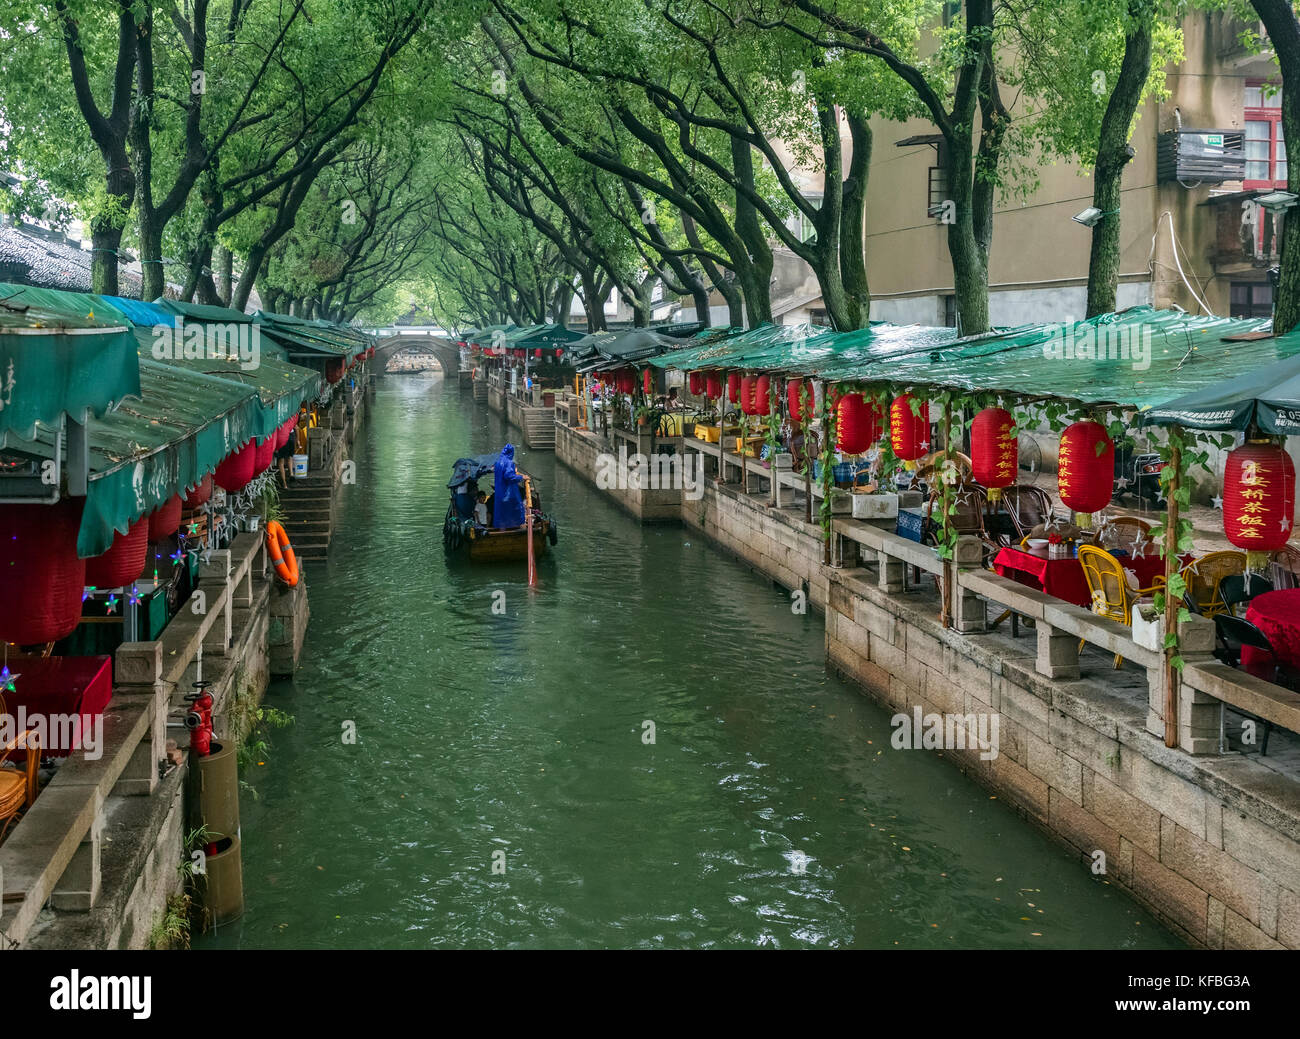 Tongli, la città di acqua in Cina (Venezia di Asia) è una famosa e bella città in Cina per molti turisti venuti a vedere la città vecchia e il tradizionale c Foto Stock